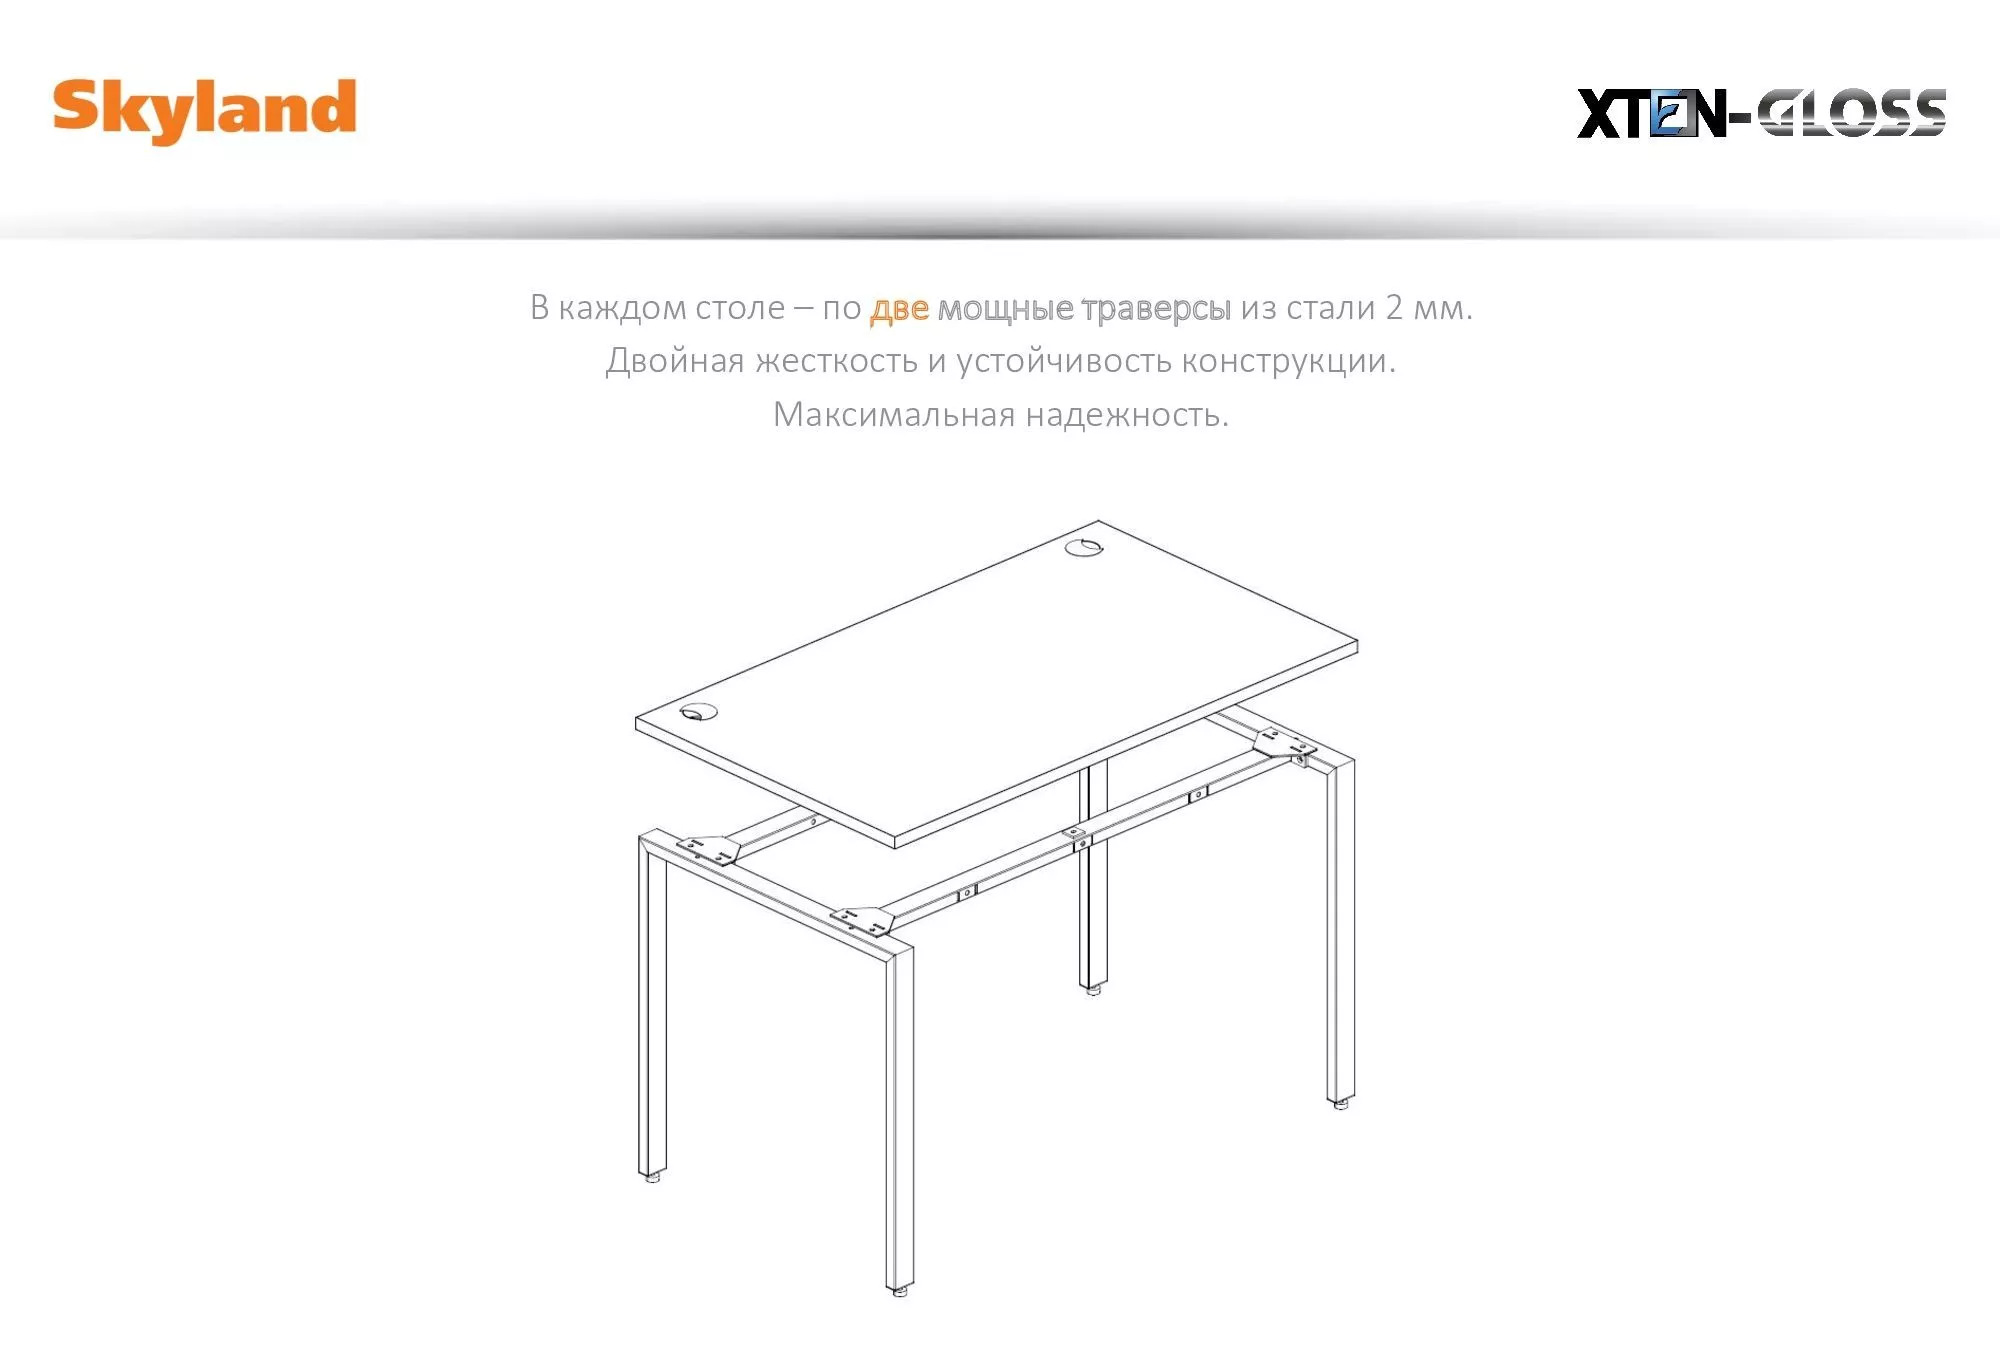 Мебель для кабинета руководителя Skyland XTEN GLOSS